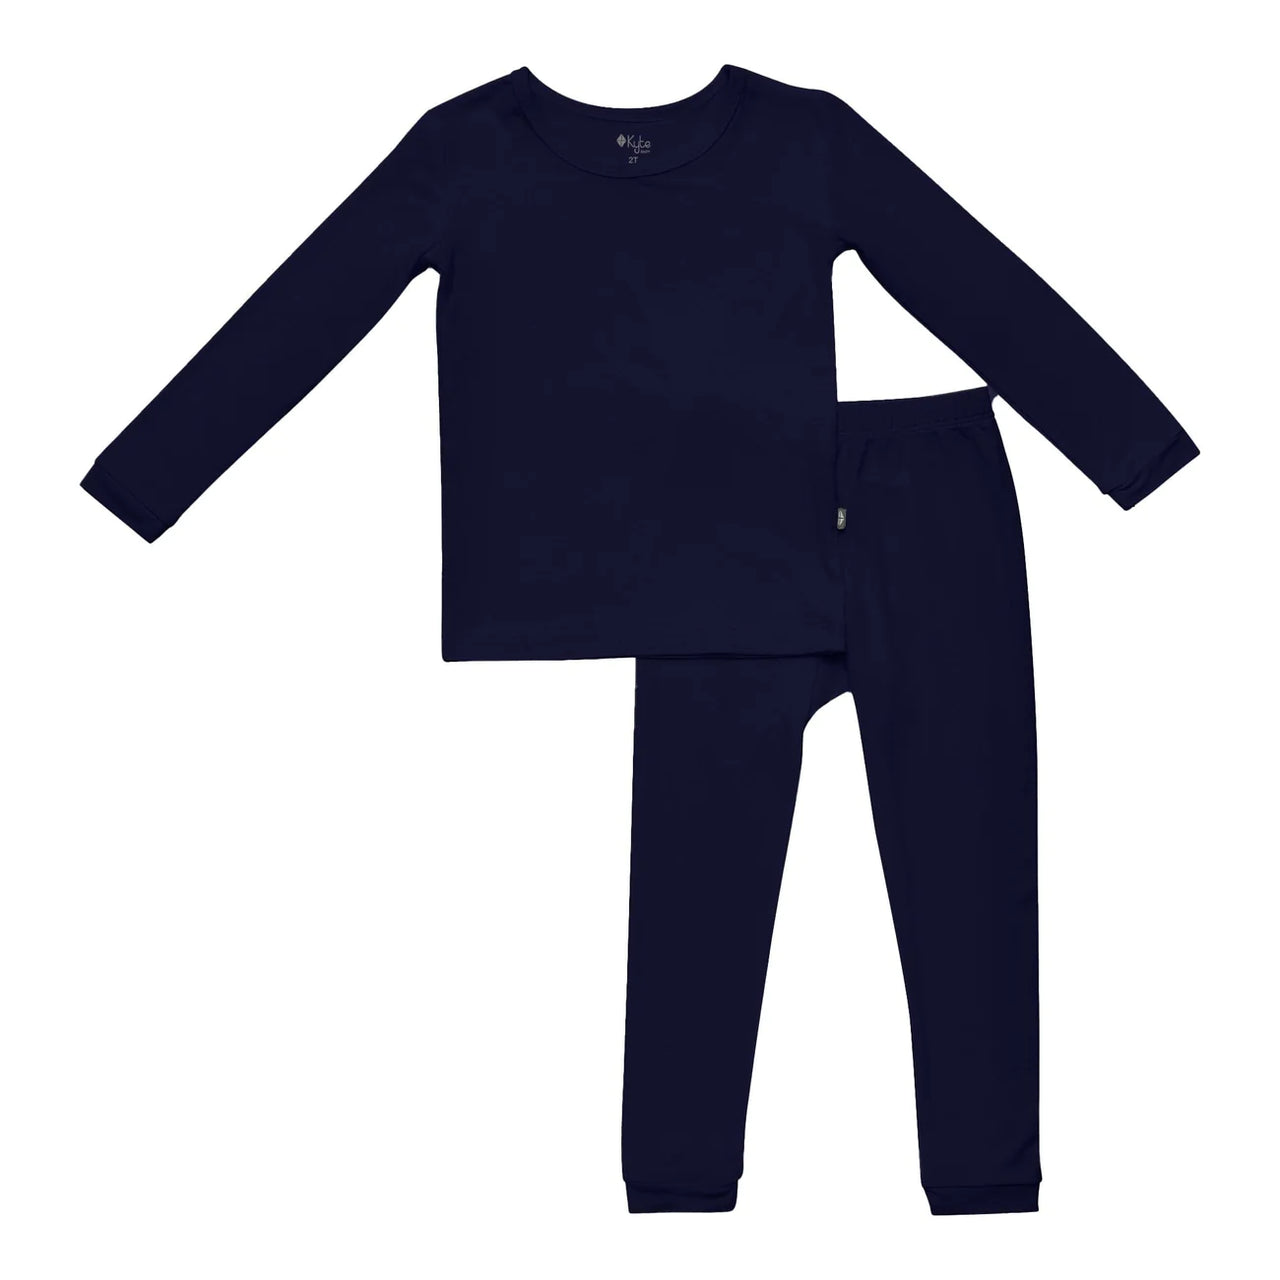 Toddler Pajama Set- Navy